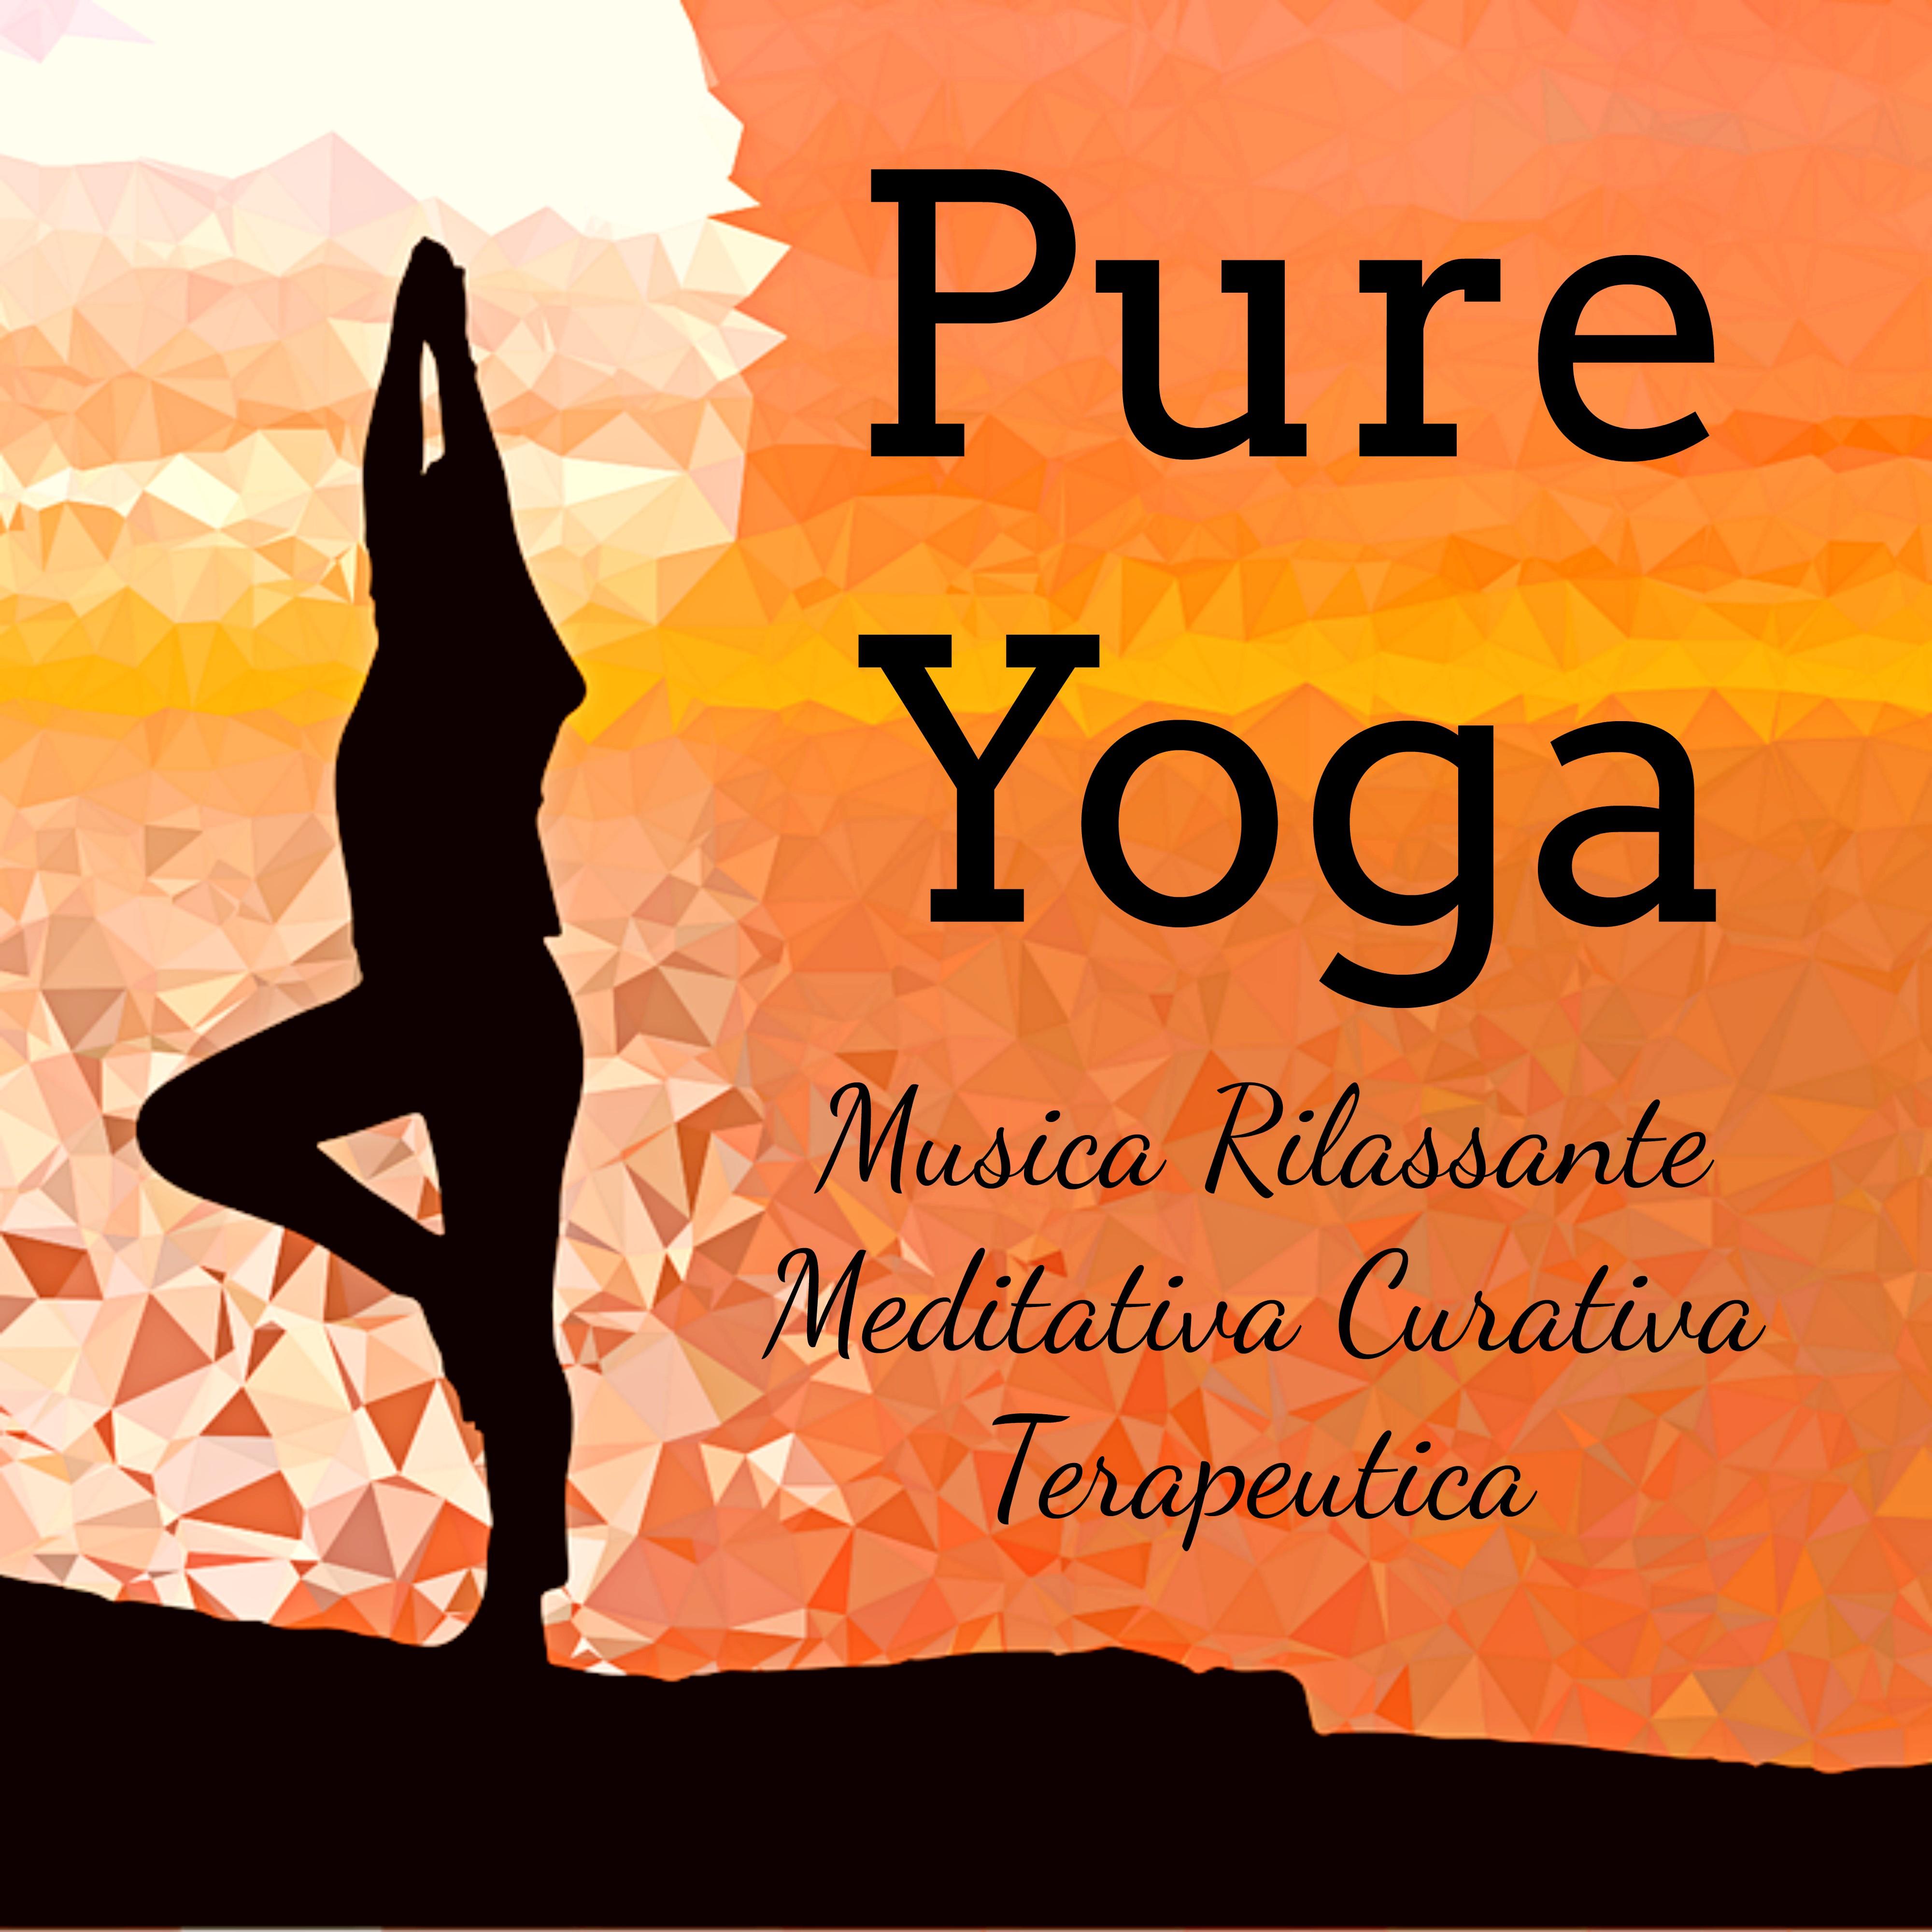 Pure Yoga - Musica Rilassante Meditativa Curativa Terapeutica per Massoterapia Centro di Energia Benessere Fisico e Mentale con Suoni New Age Ambientali Spirituali e Strumentali